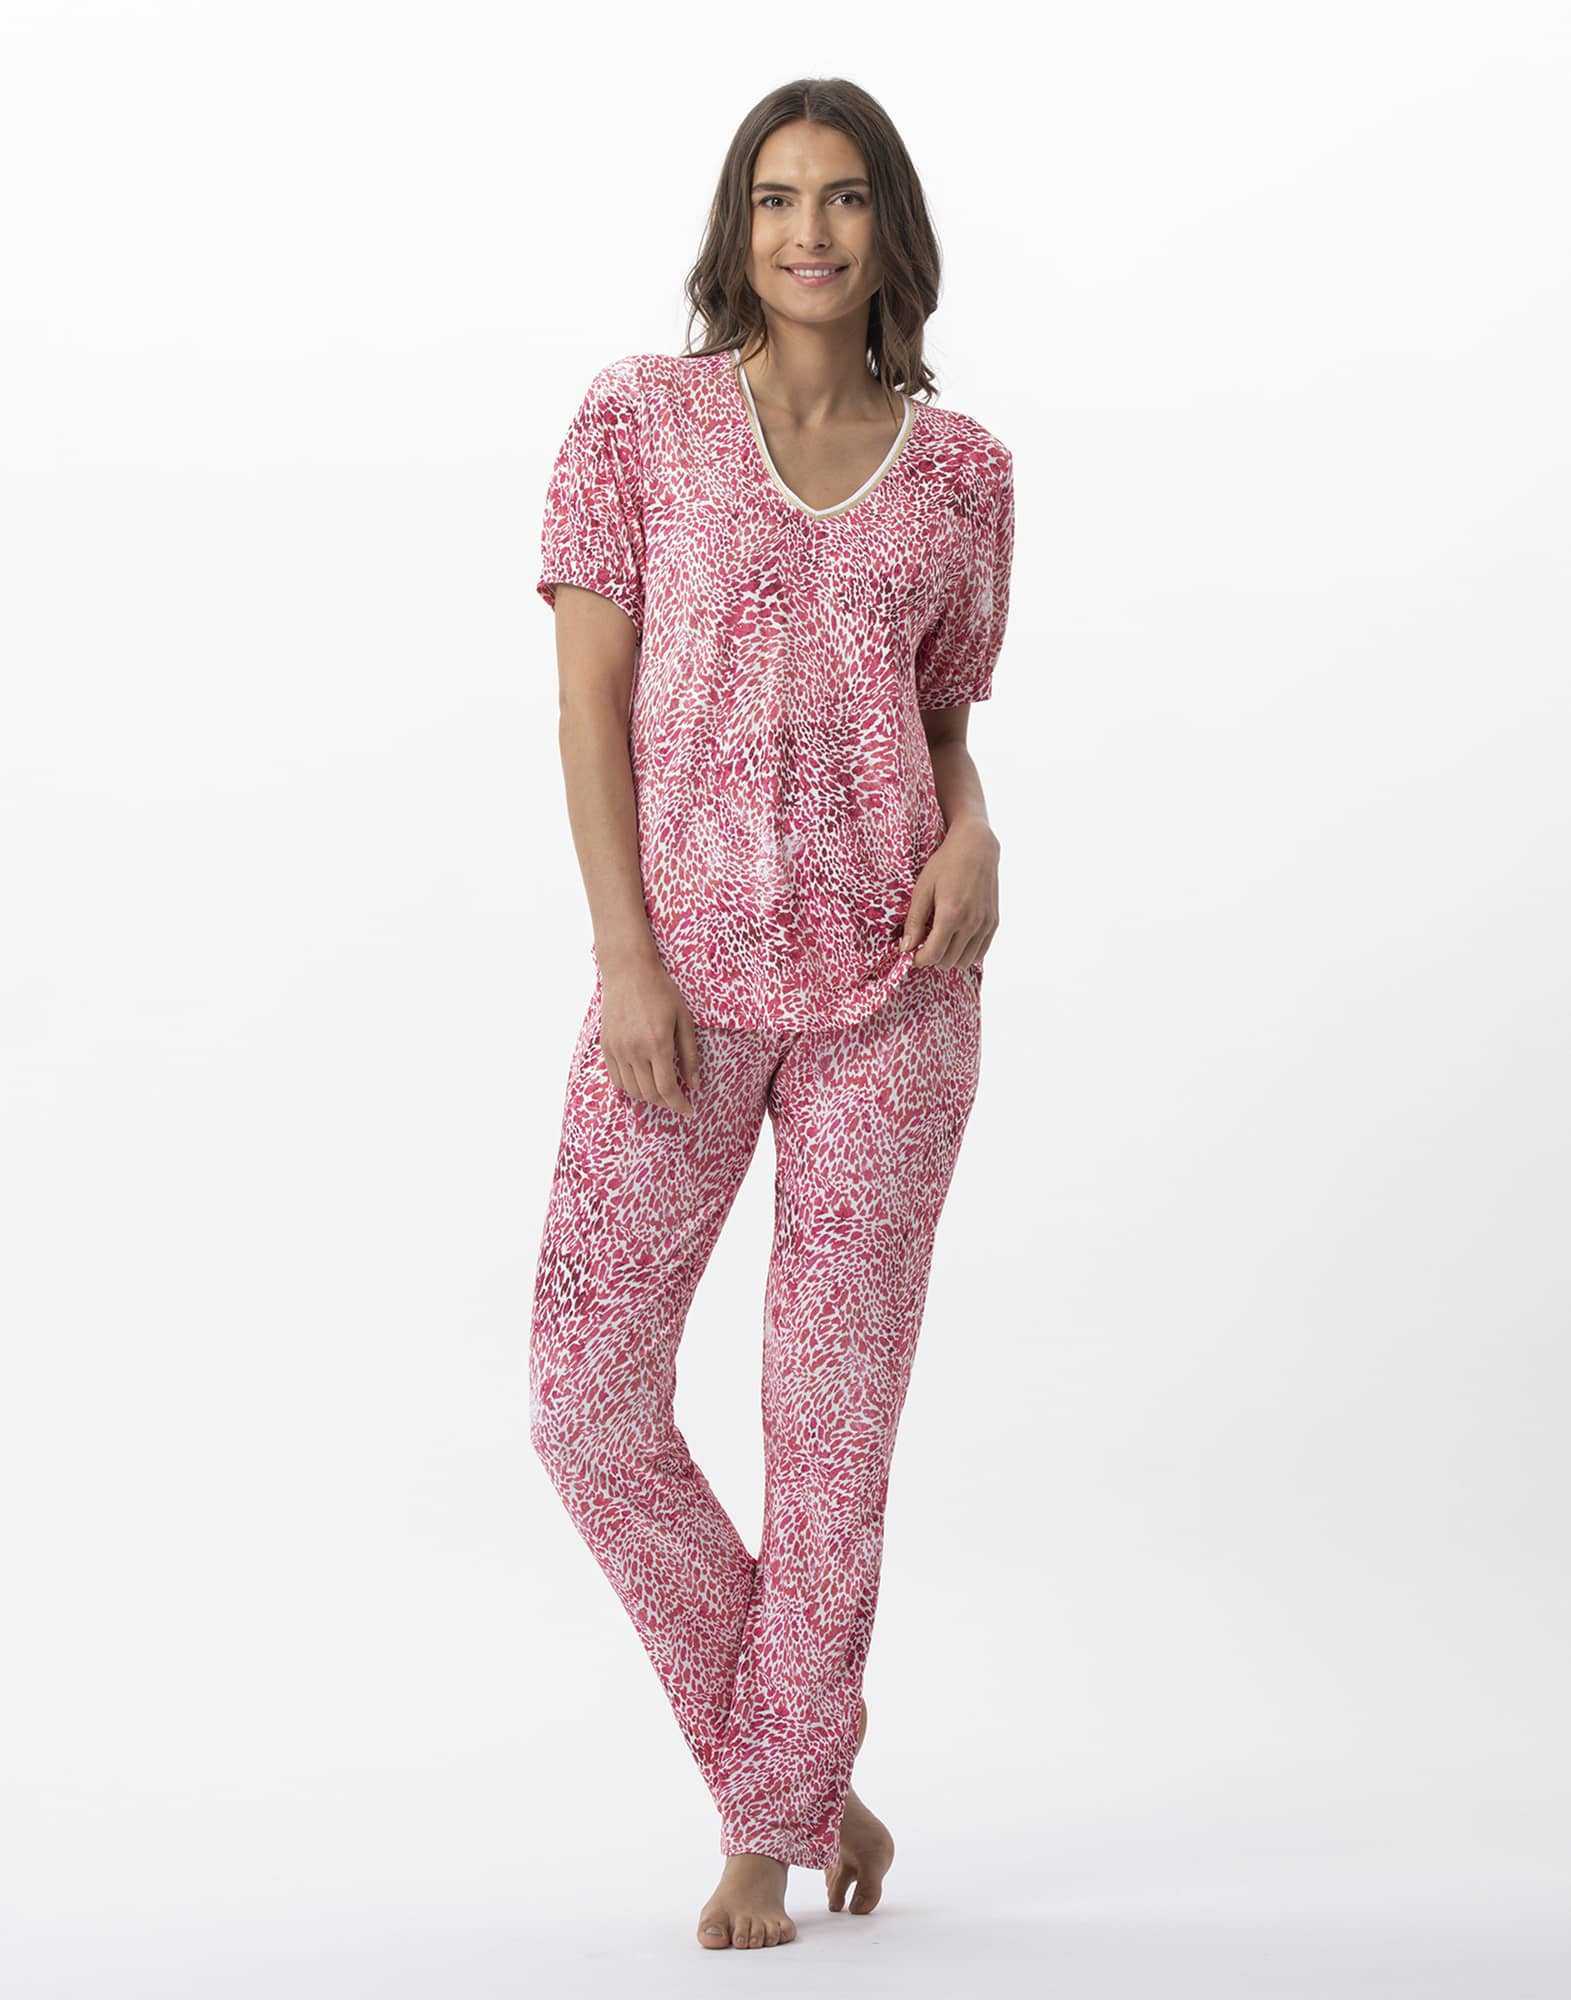 Pyjama 7/8° imprimé en viscose élasthanne VICTORIA 702 fraise  | Lingerie le Chat